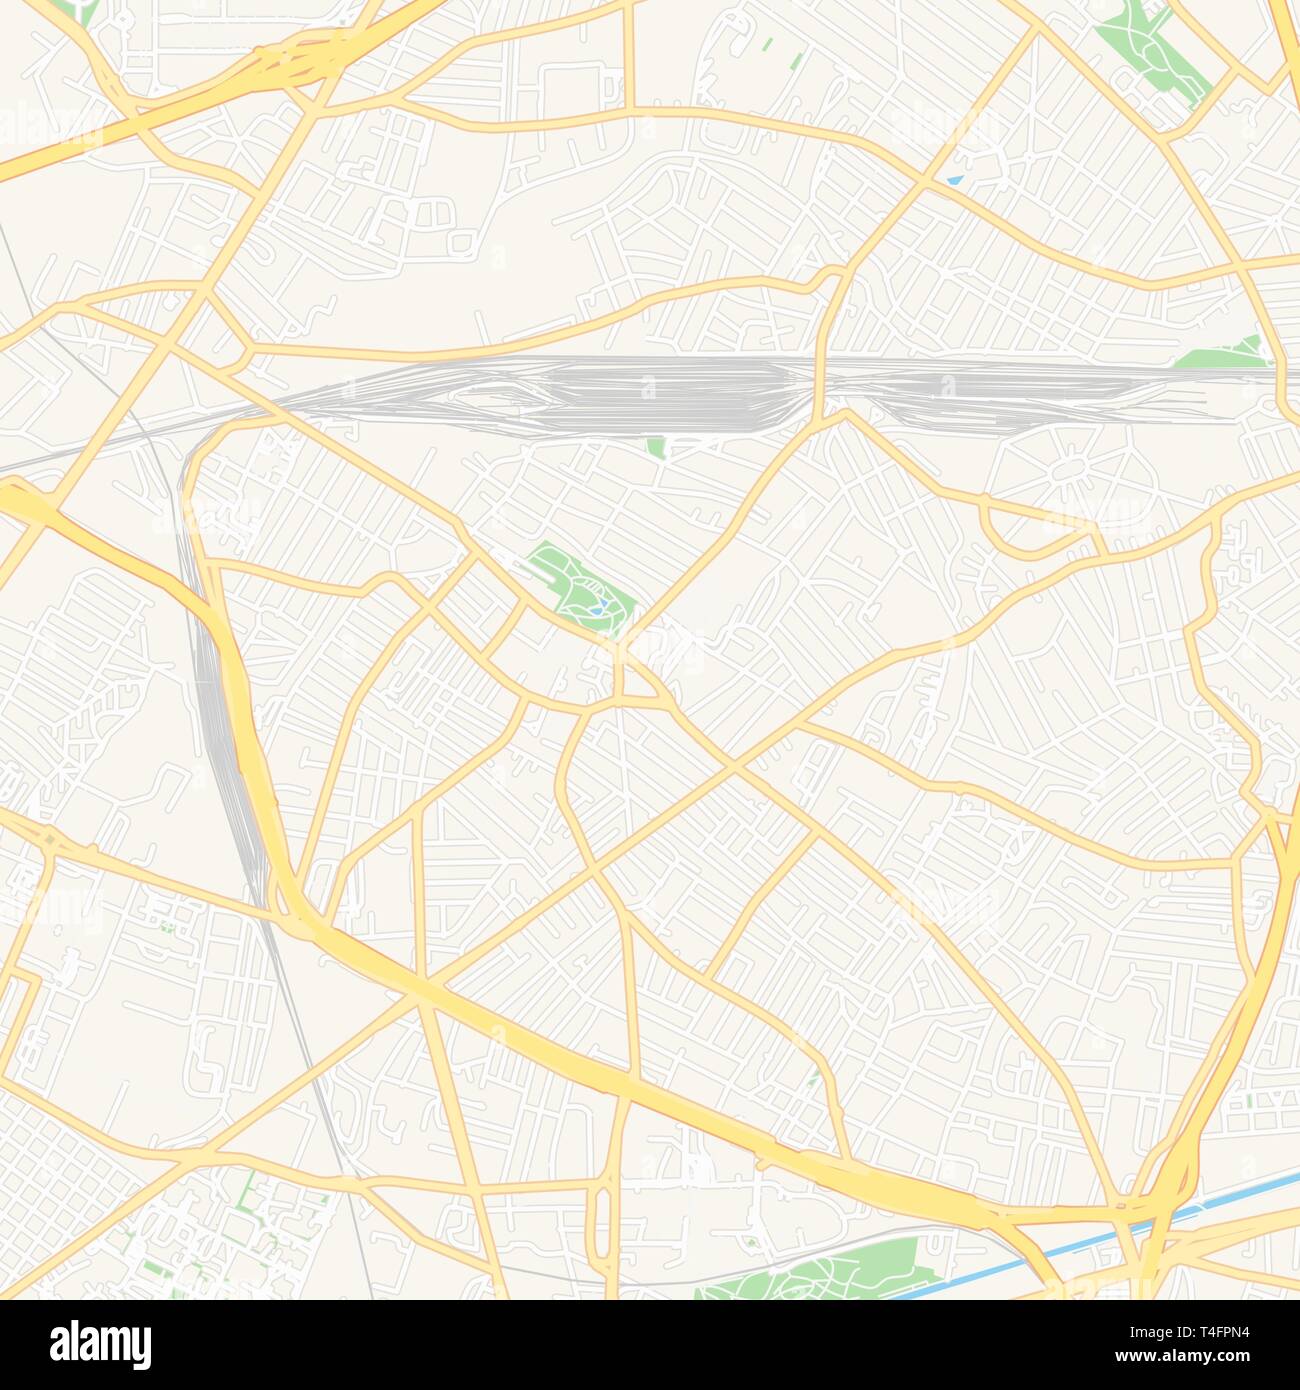 Druckbare Karte von Drancy, Frankreich mit Haupt- und Nebenstraßen und größere Bahnen. Diese Karte ist sorgfältig für das Routing und die Platzierung von einzelnen d ausgelegt Stock Vektor